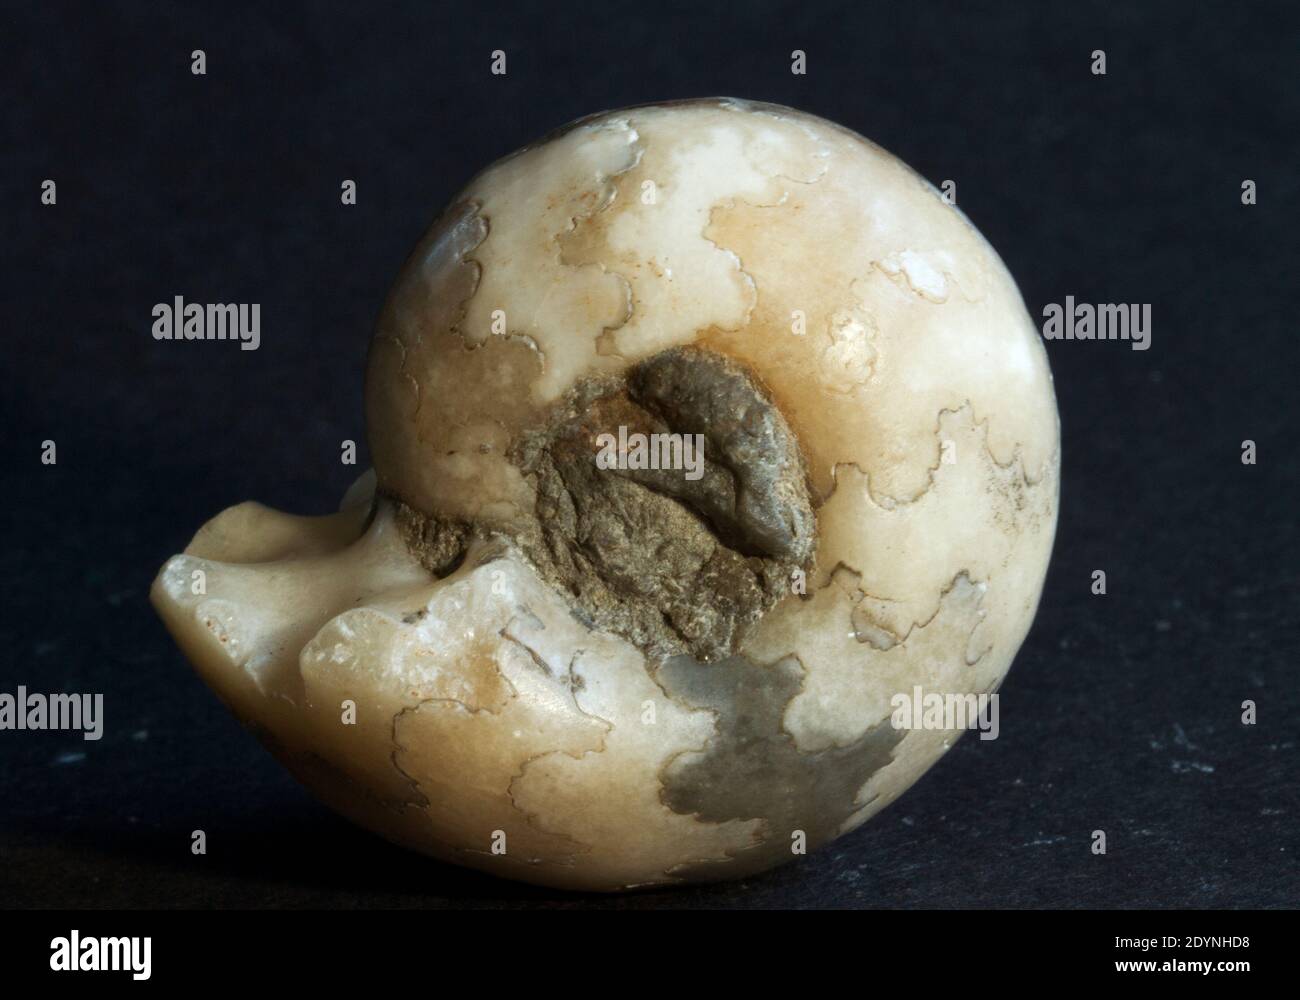 La coquille de cette Ammonite fossilisée de la famille Phyllocarus la montre les lignes de suture complexes qui marquent le remplissage individuel de gaz chambres Banque D'Images